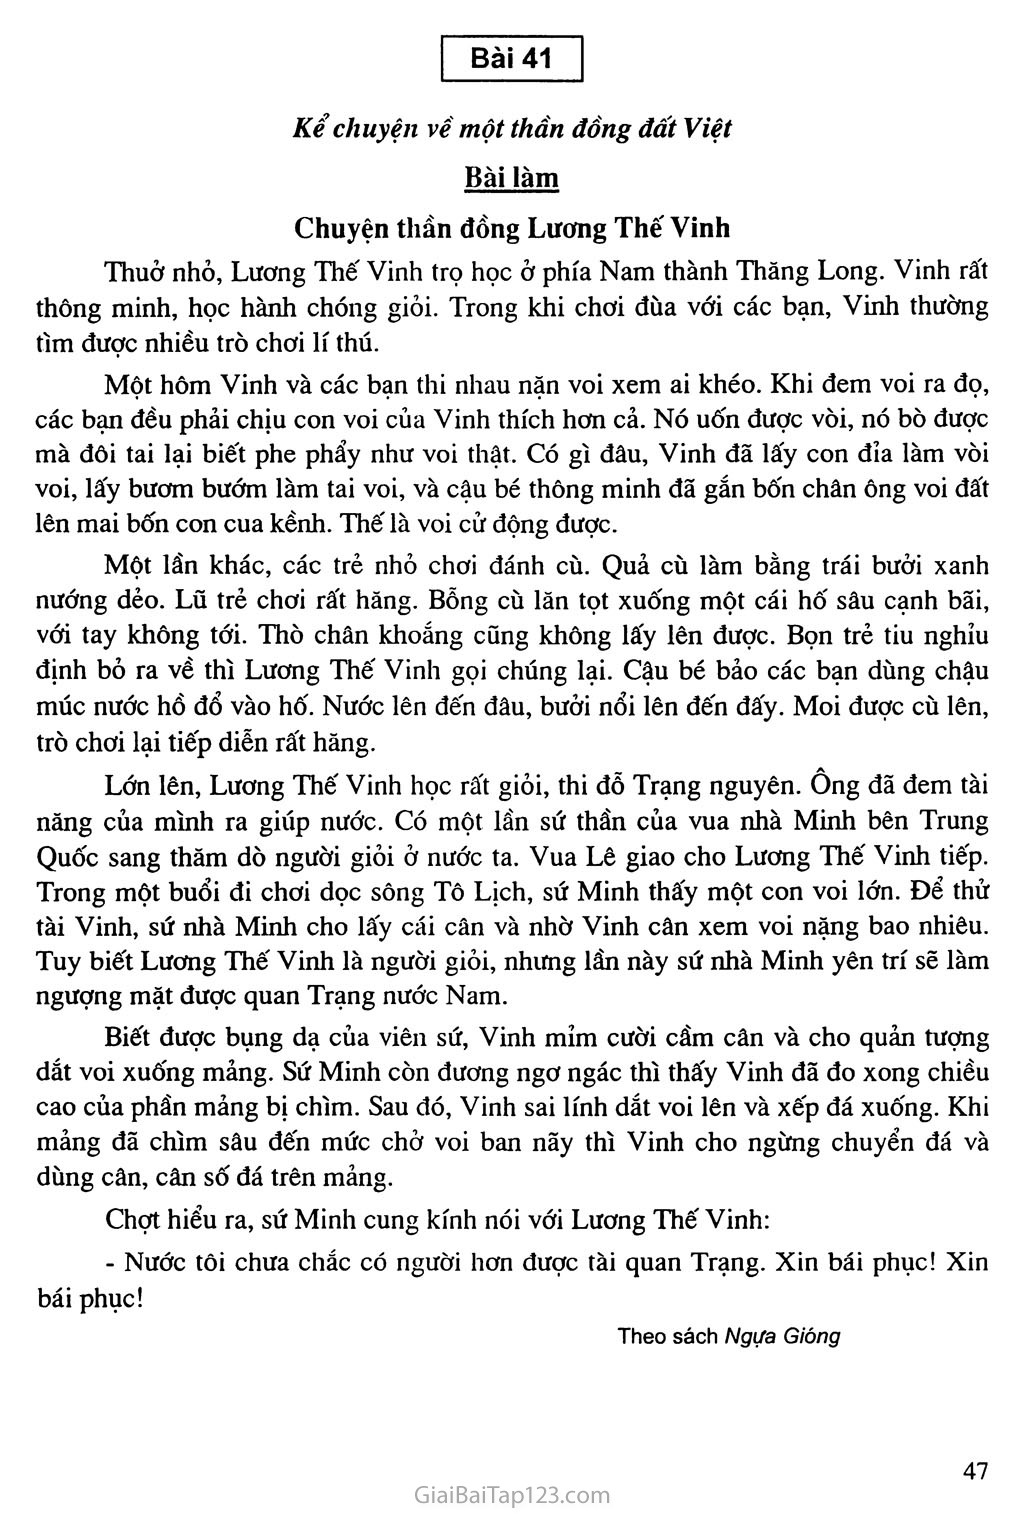 Bài 41: Kể chuyện về một thần đồng đất Việt: Chuyện thần đồng Lương Thế Vinh trang 1